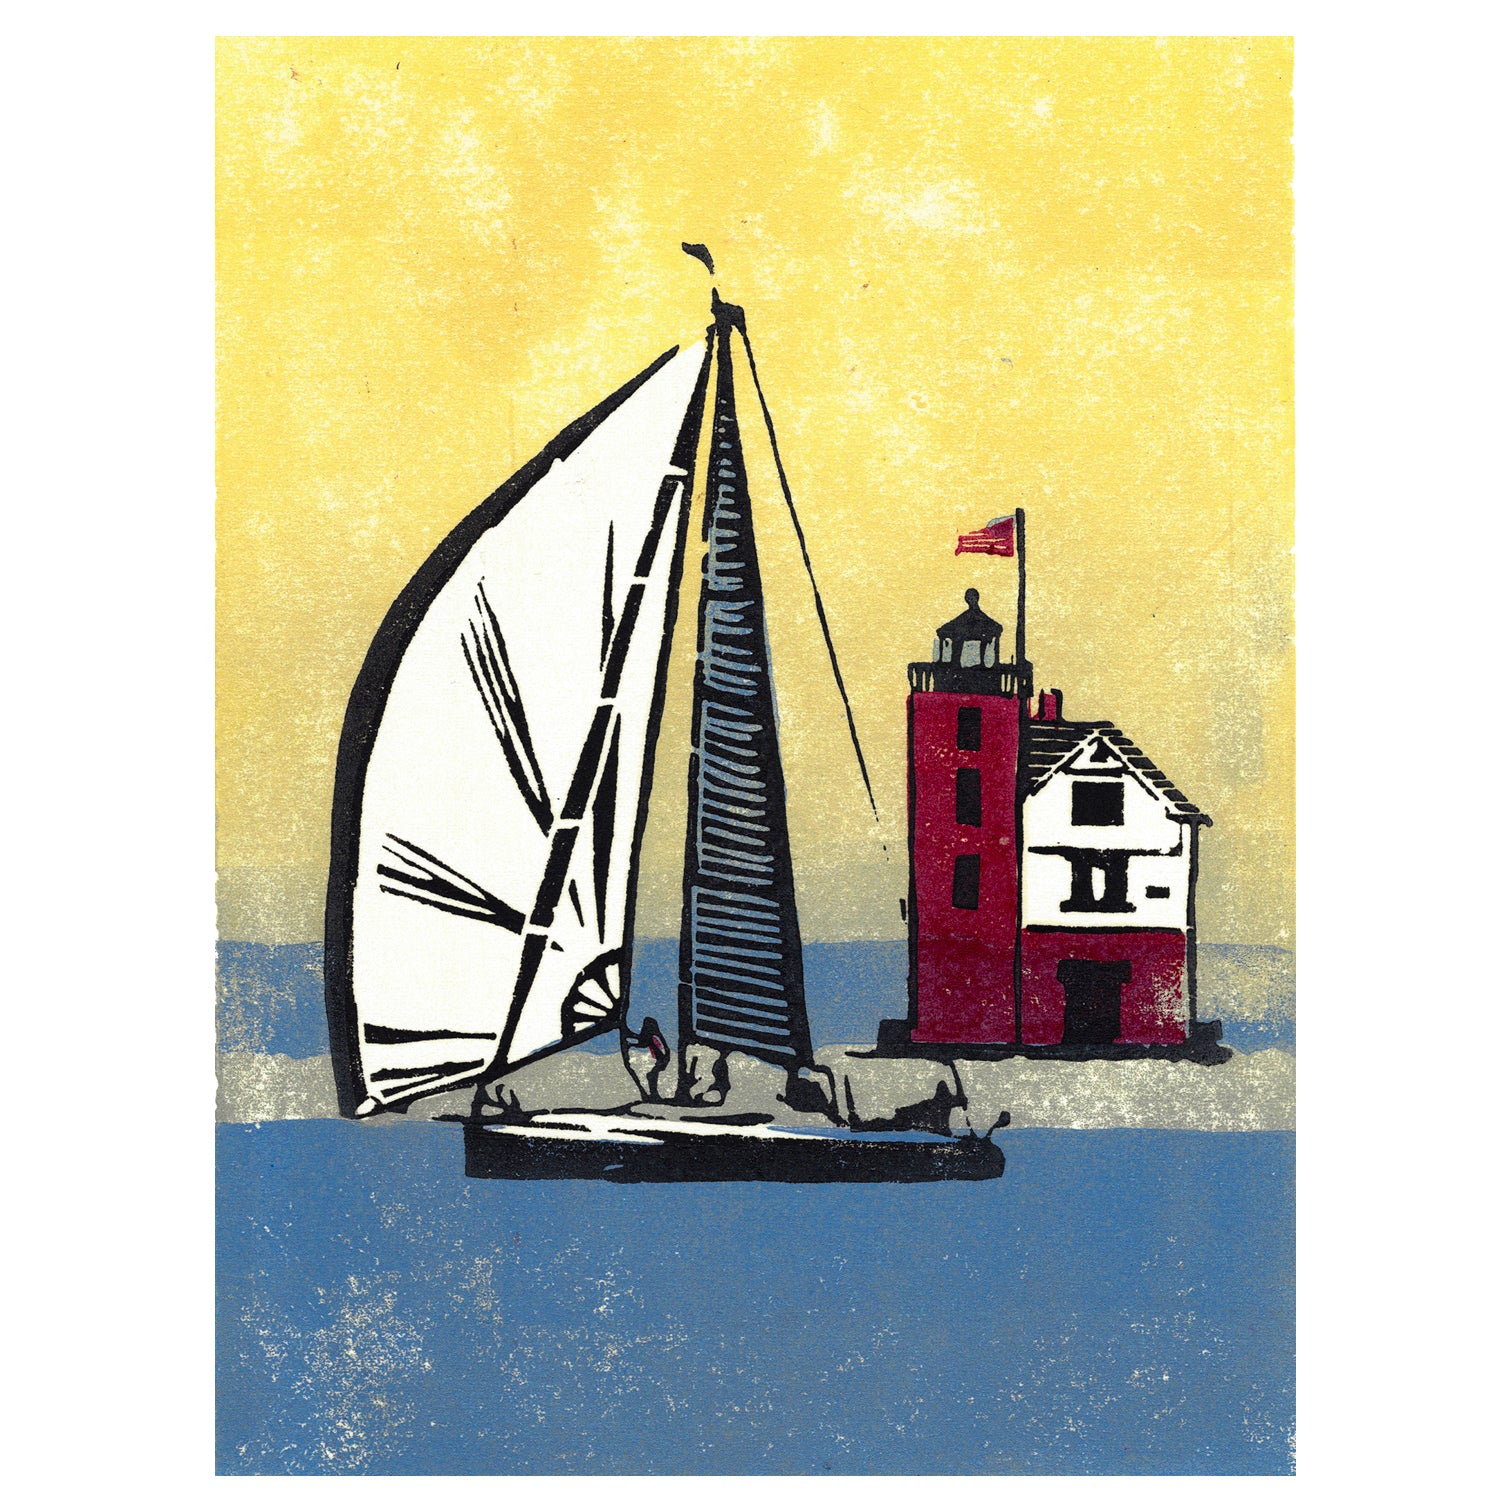 Nautical art celebrating Great Lakes sailing by printmaker Natalia Wohletz of Peninsula Prints, Milford & Mackinac Island, titled Foggy Finish.